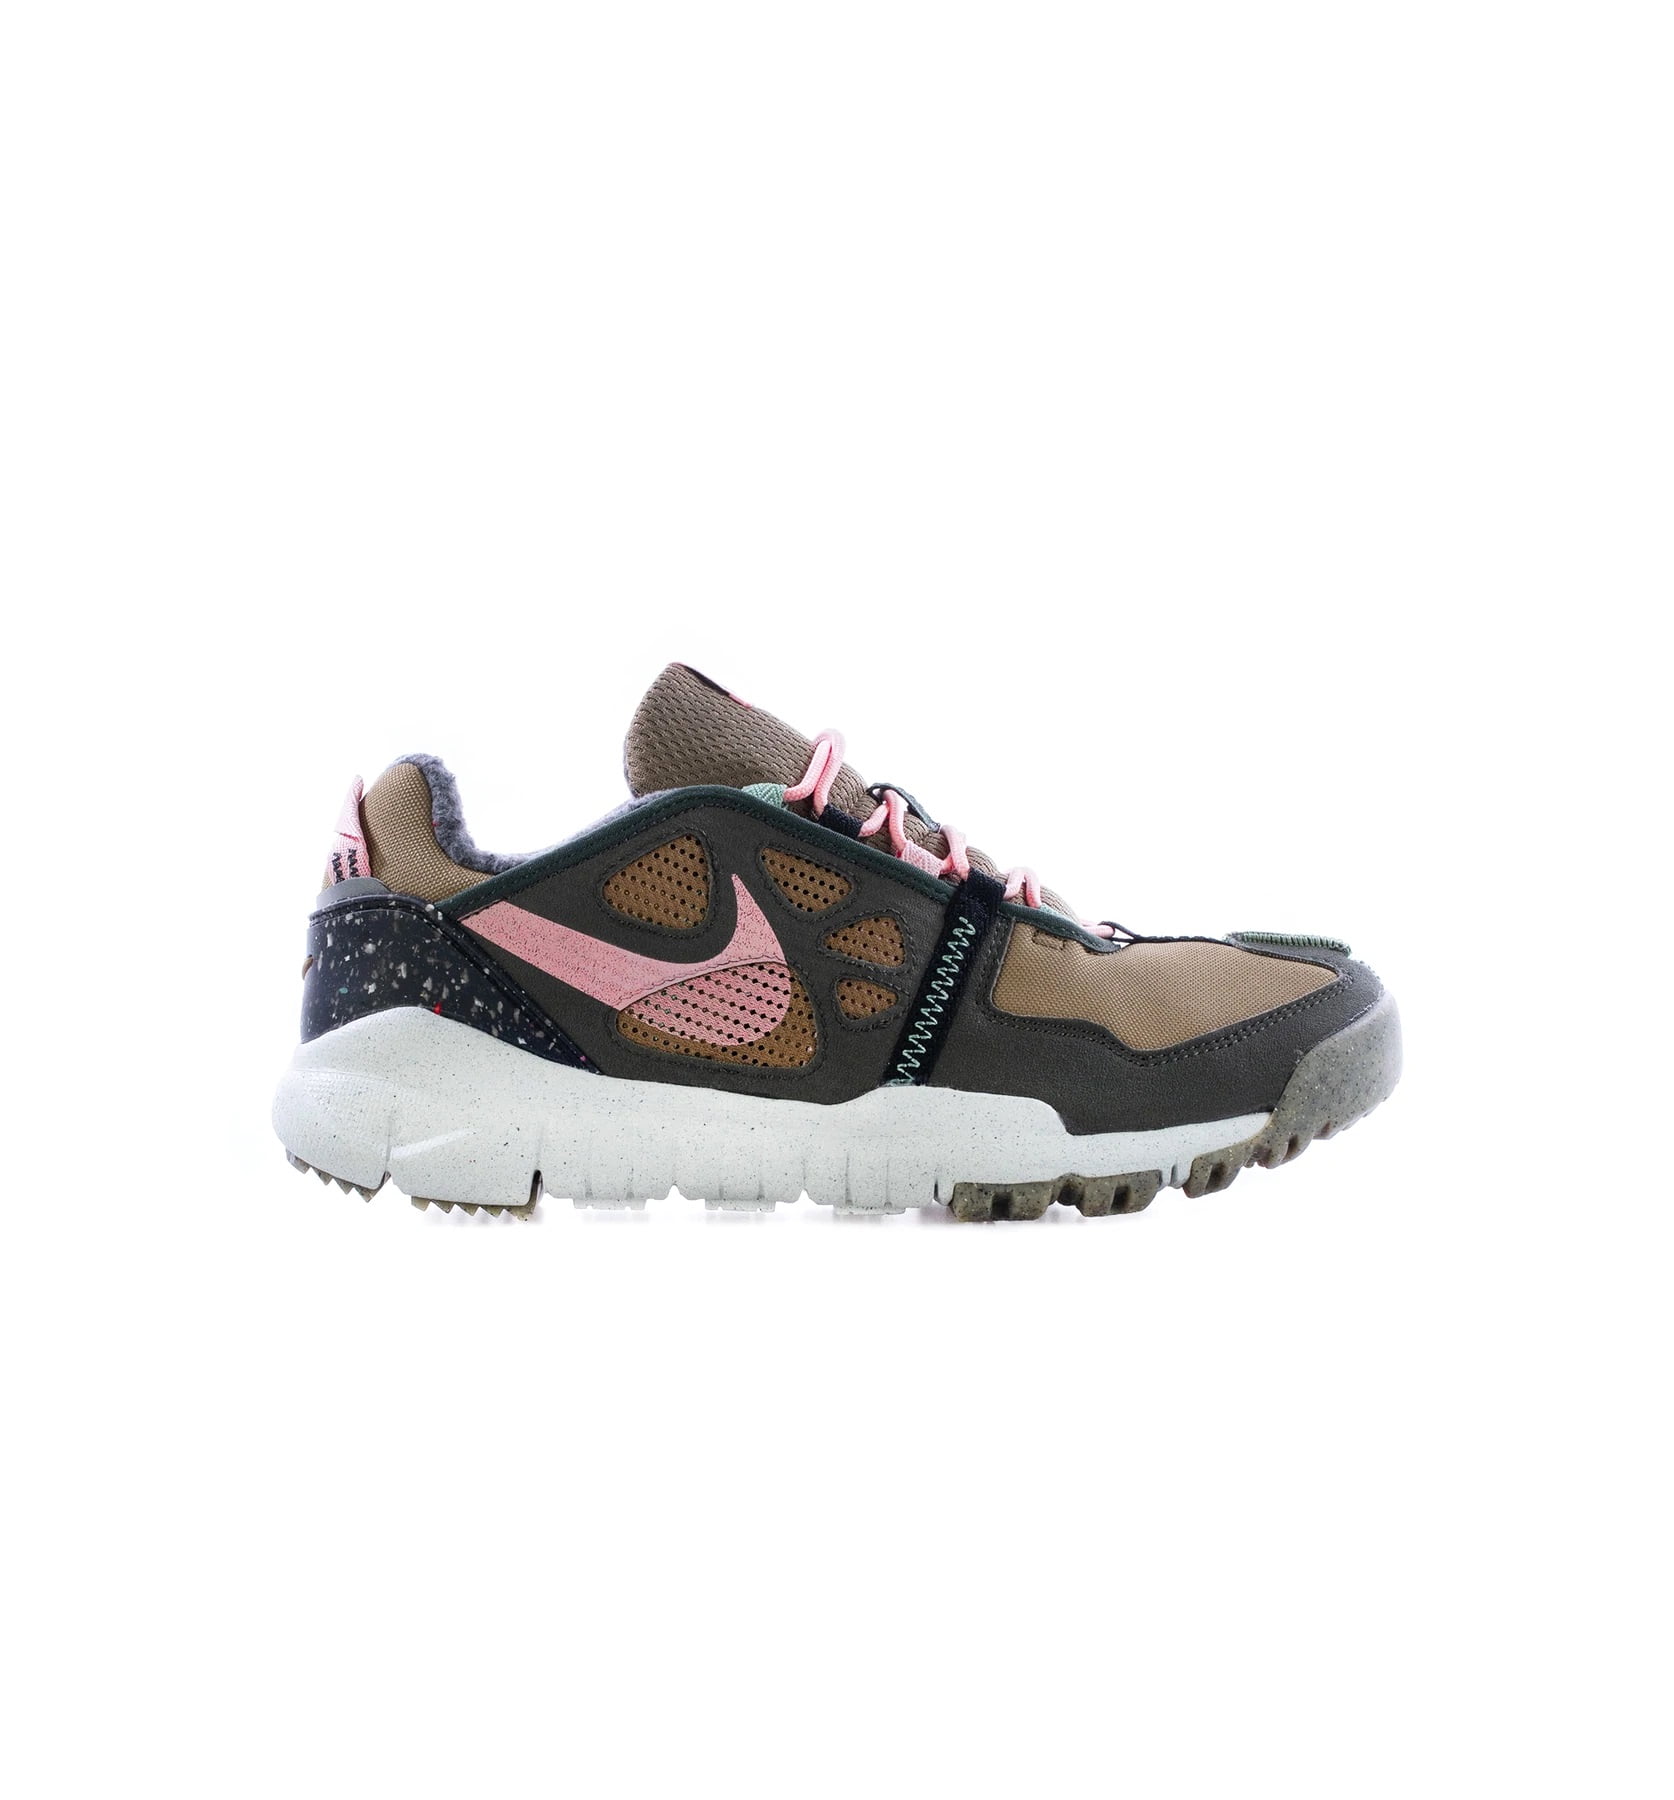 specificatie Scherm schoenen Men's Nike Free Terra Vista Brown Kelp/Pink Glaze-Sequoia (CZ1757 300) -  10.5 - Walmart.com